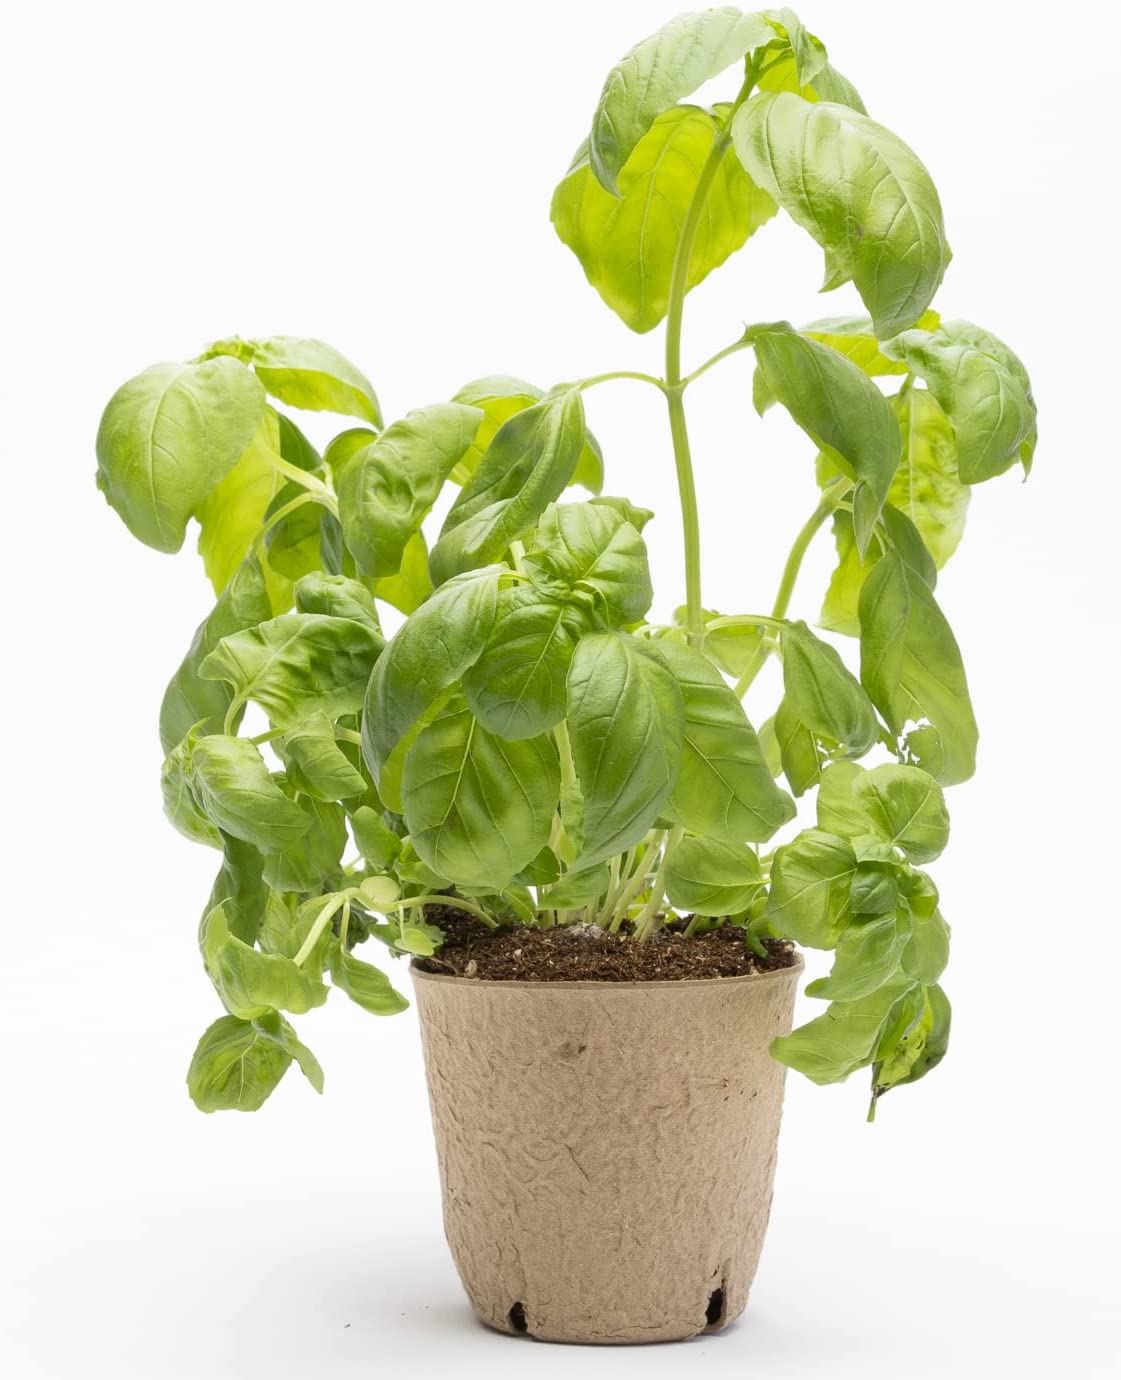 DesertUSA Heirloom Organic Genovese Basil Garden Grow Kit